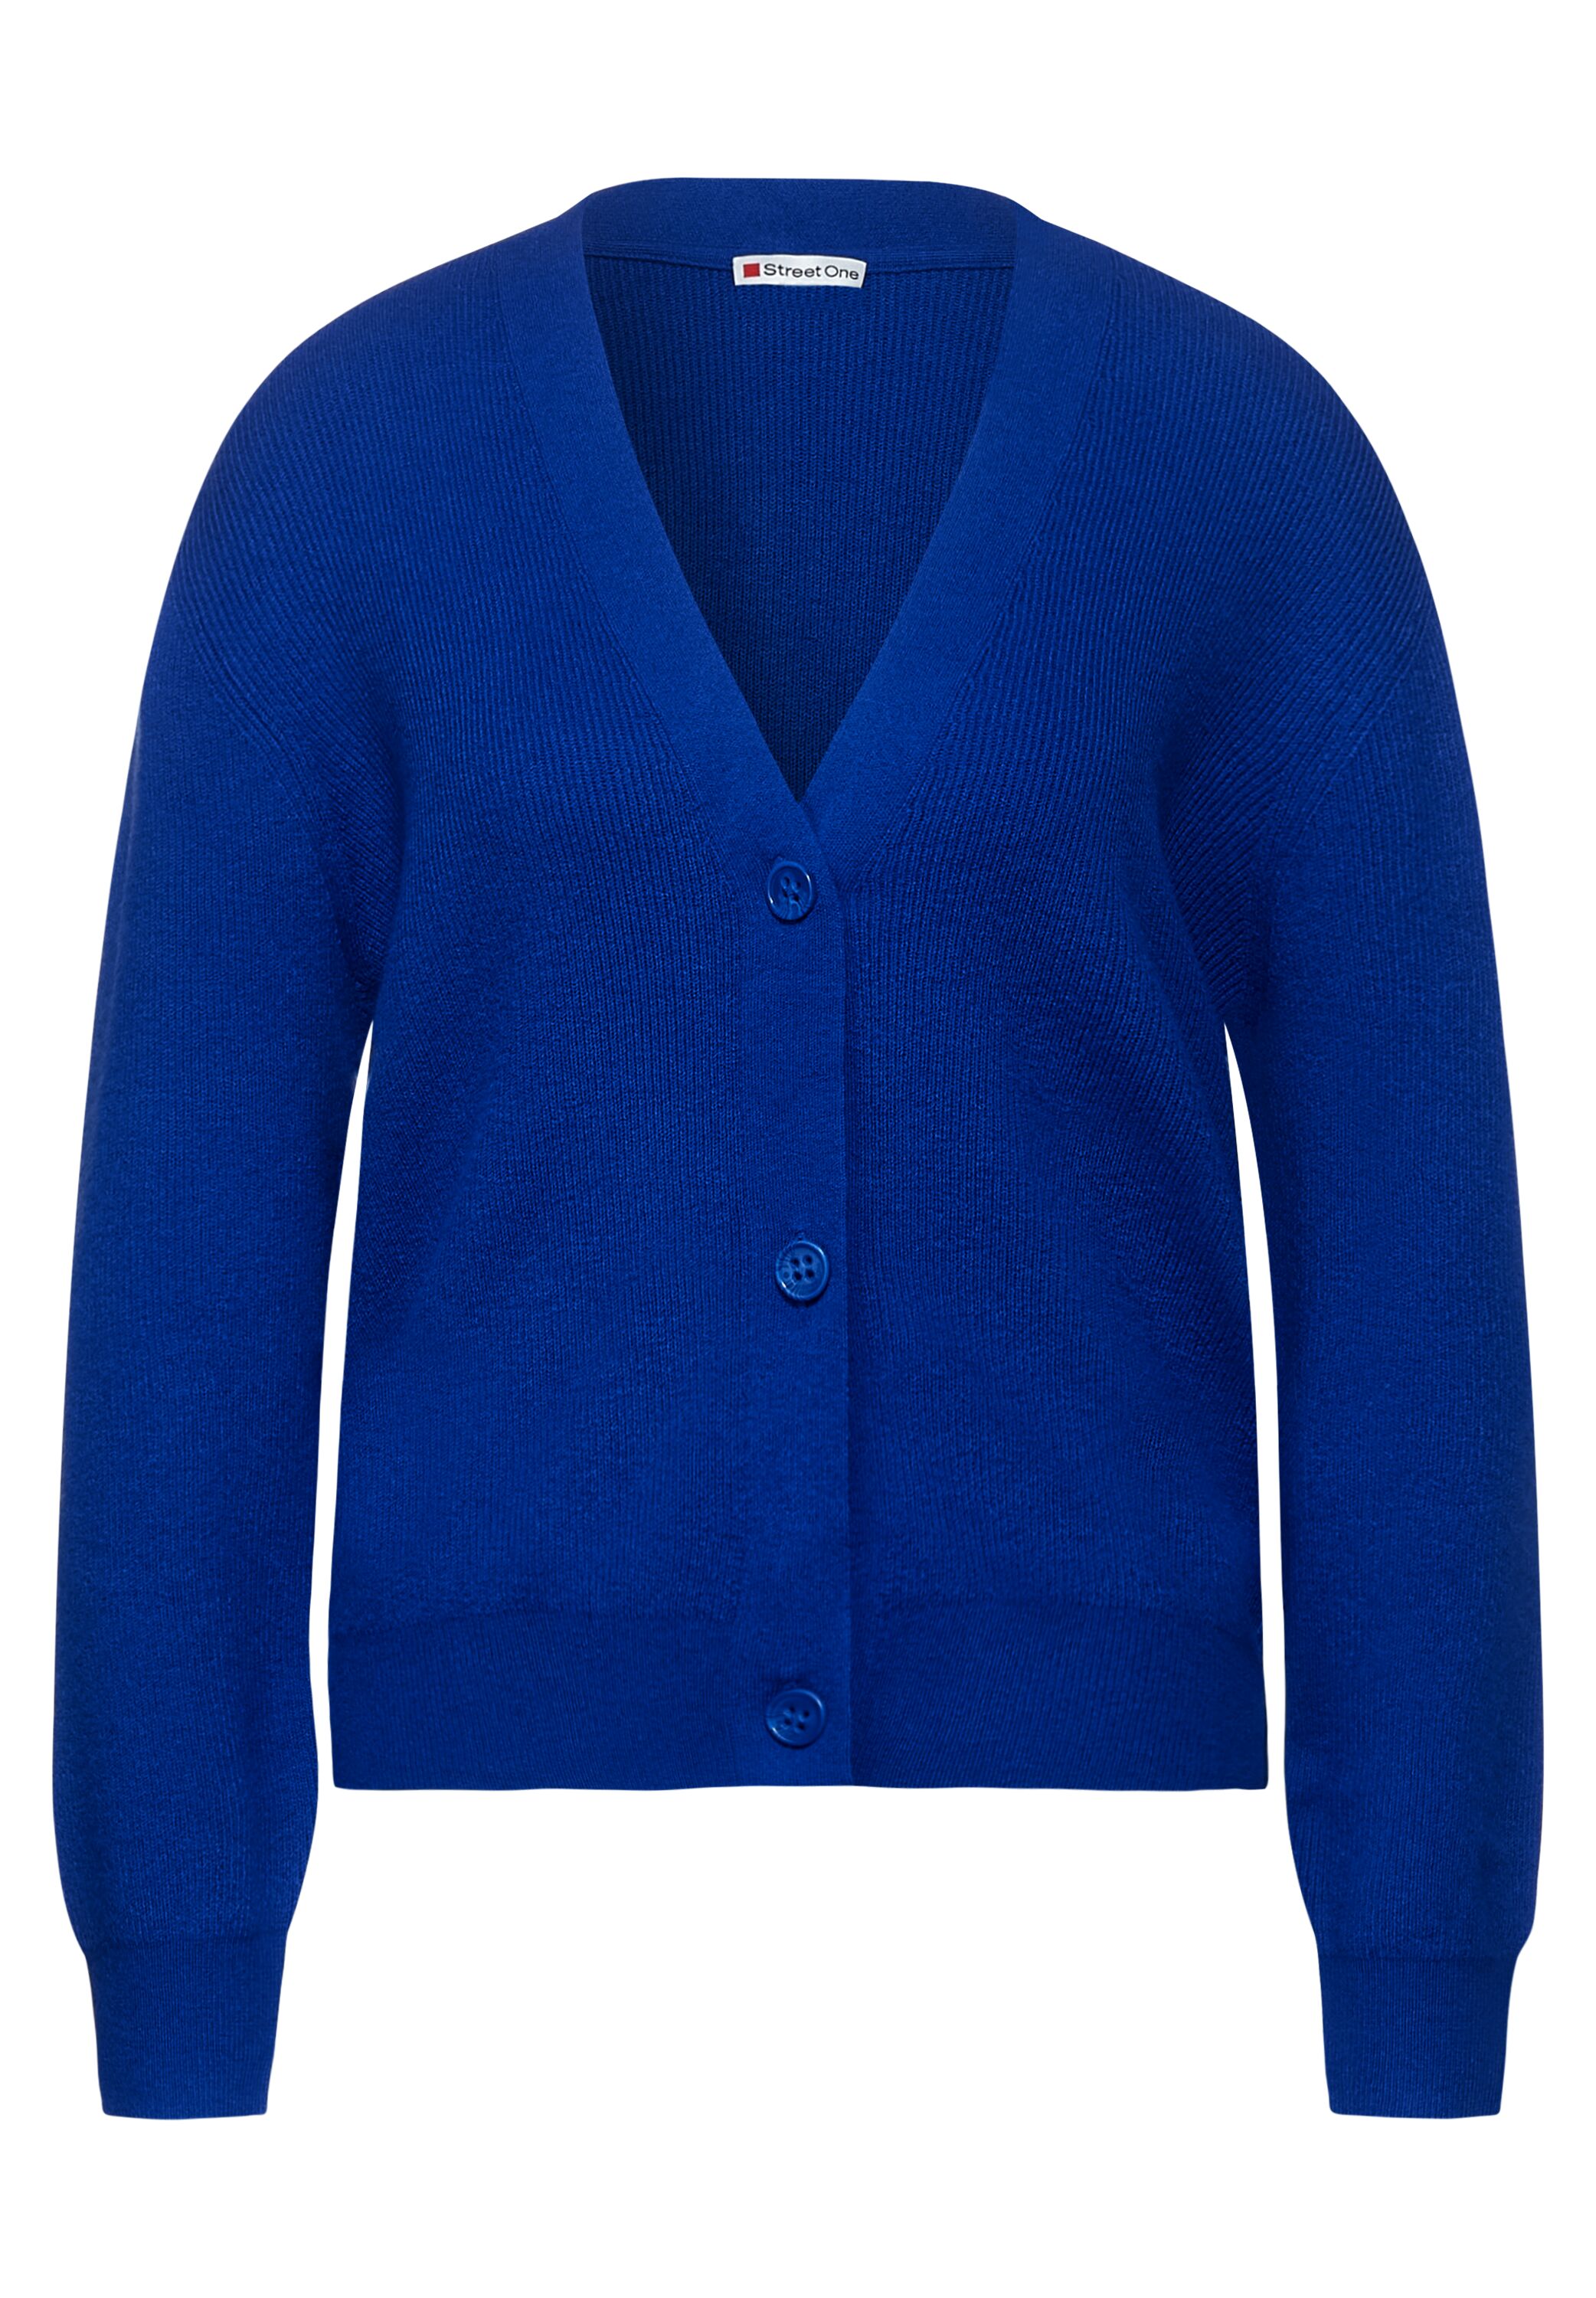 Street One Cardigan in Cobalt Blue Melange A253081-12685 - CONCEPT Mode